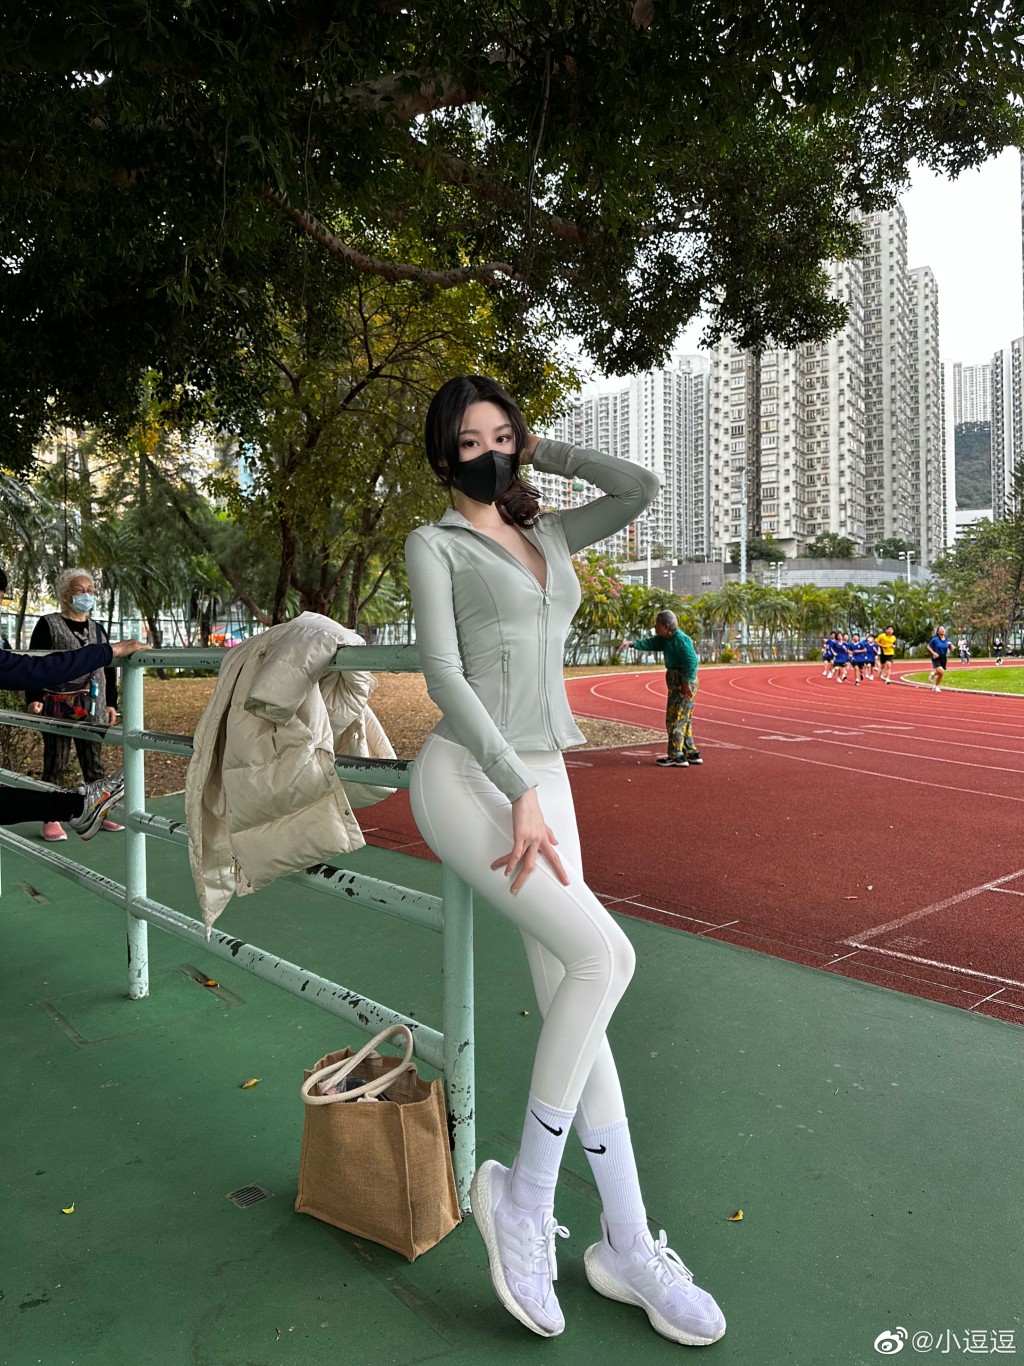 在香港一个运动场拍照。